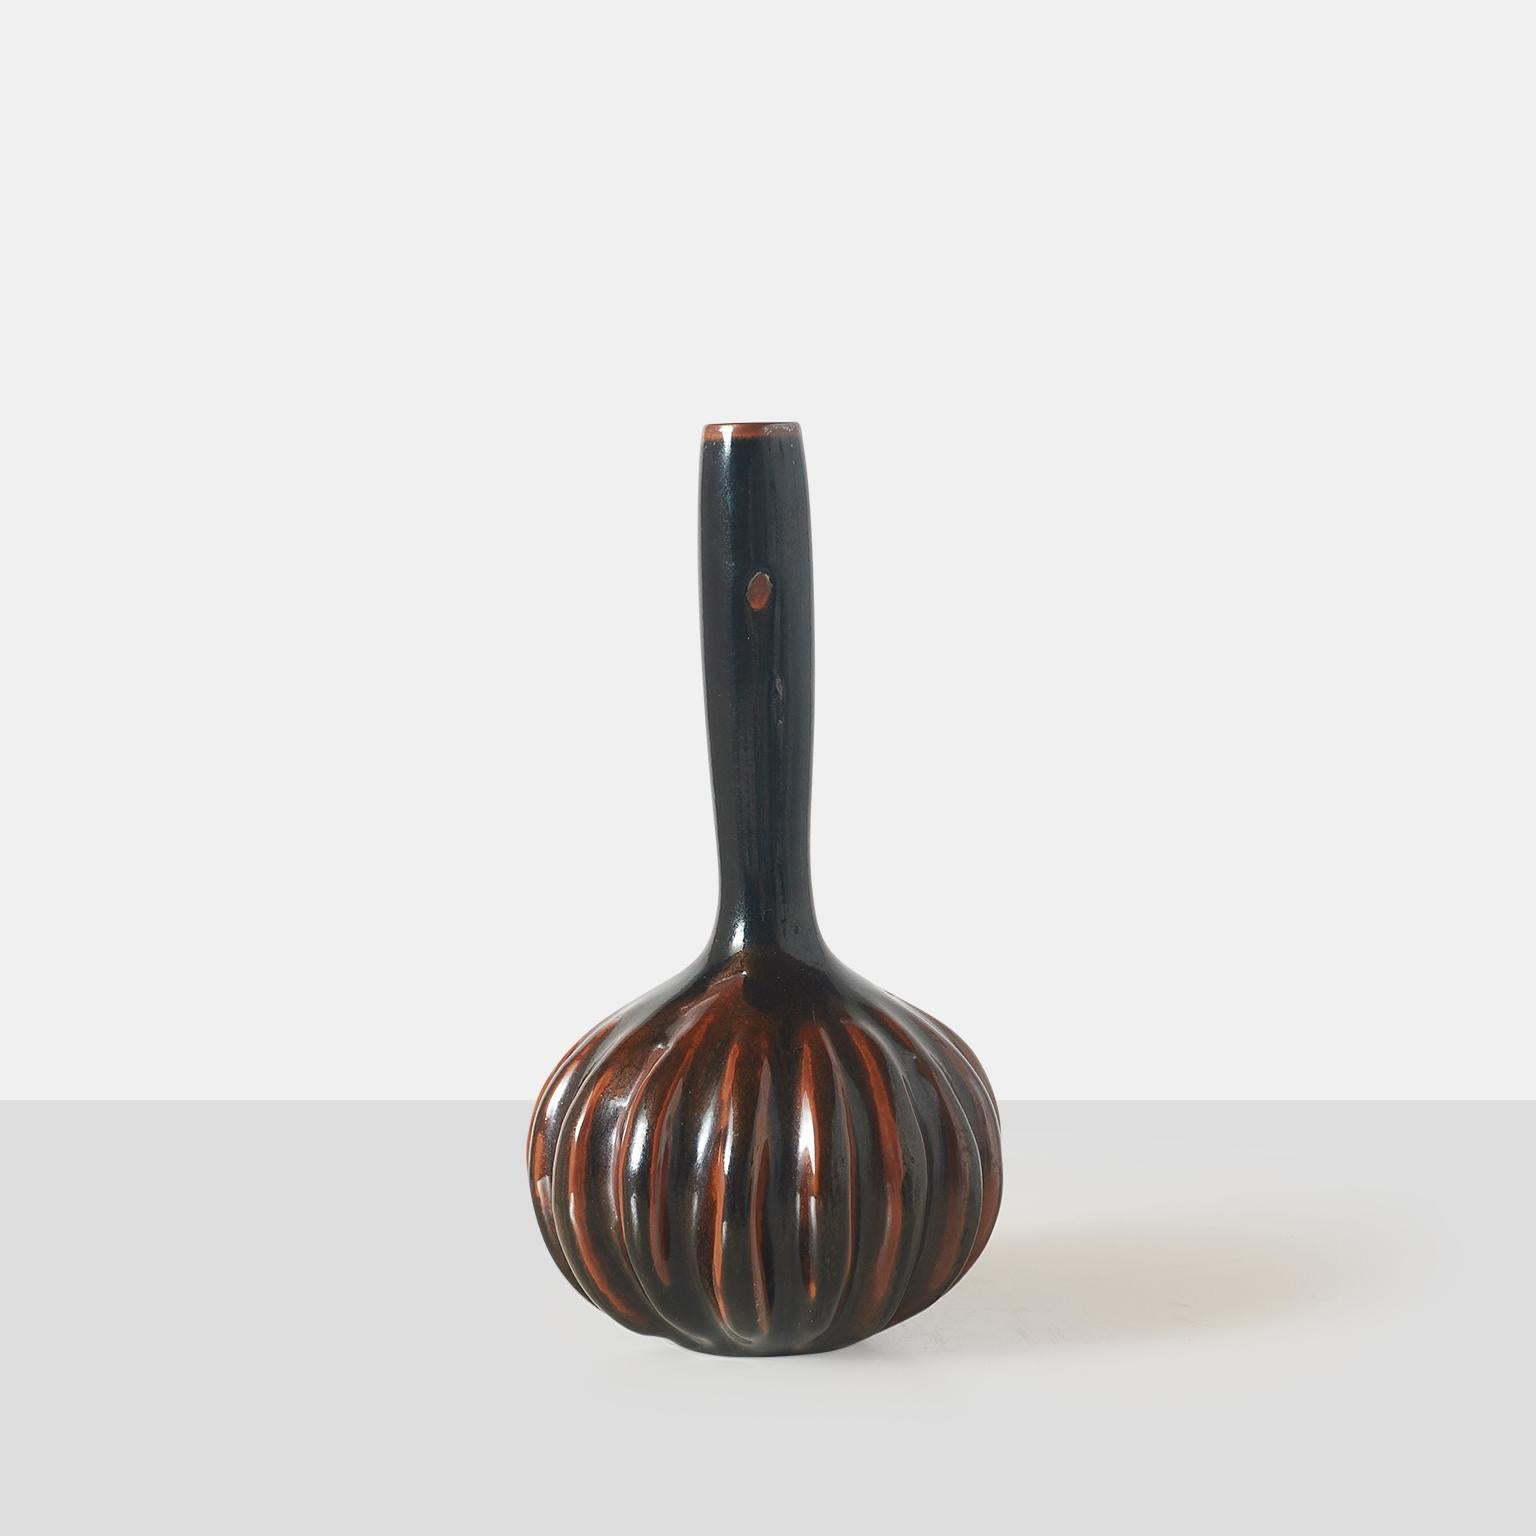 Un vase en grès d'Axel Salto pour Royal Copenhagen avec un long col mince et une base cannelée, décoré d'une glaçure olivine rouge et brune. Signé SALTO sur la base.